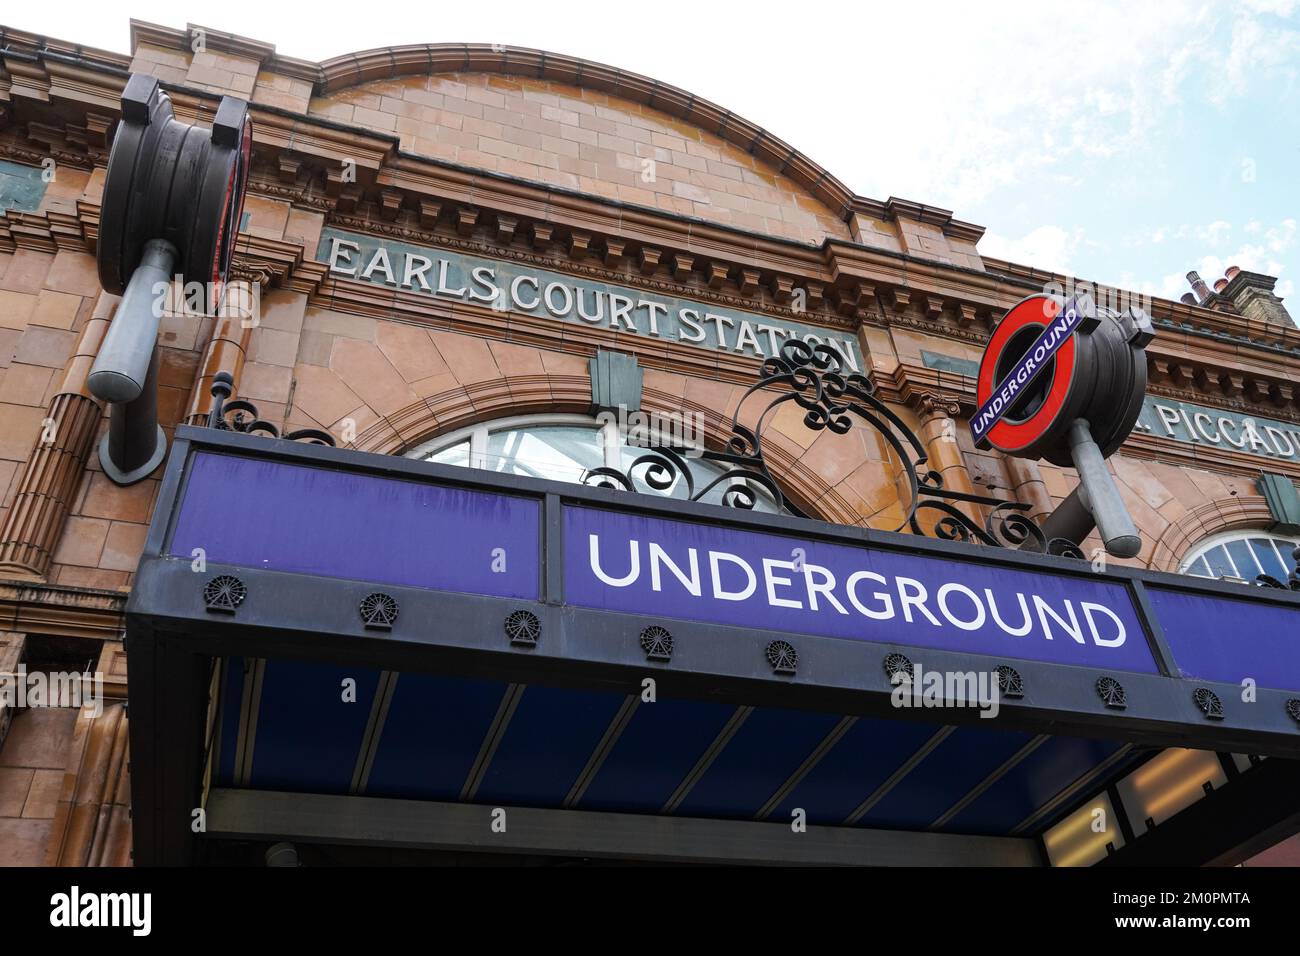 Earl's Court underground, tube station in London England United Kingdom UK Stock Photo